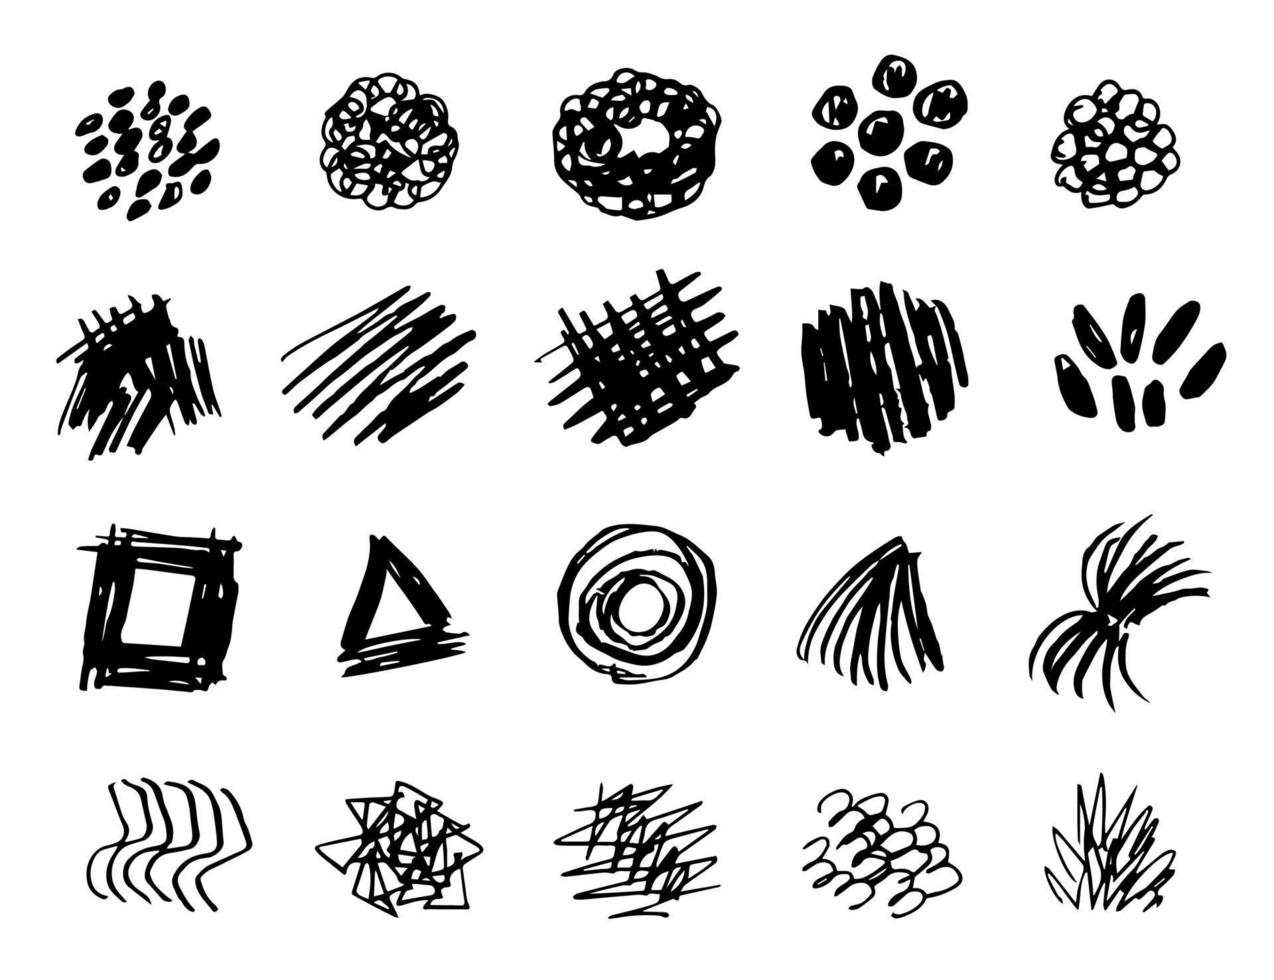 conjunto de garabatos vectoriales dibujados a mano en blanco y negro. manchas, puntos, trazos, líneas, garabatos. para estampados, pinceles, creación de patrones, decoración, decoración. vector